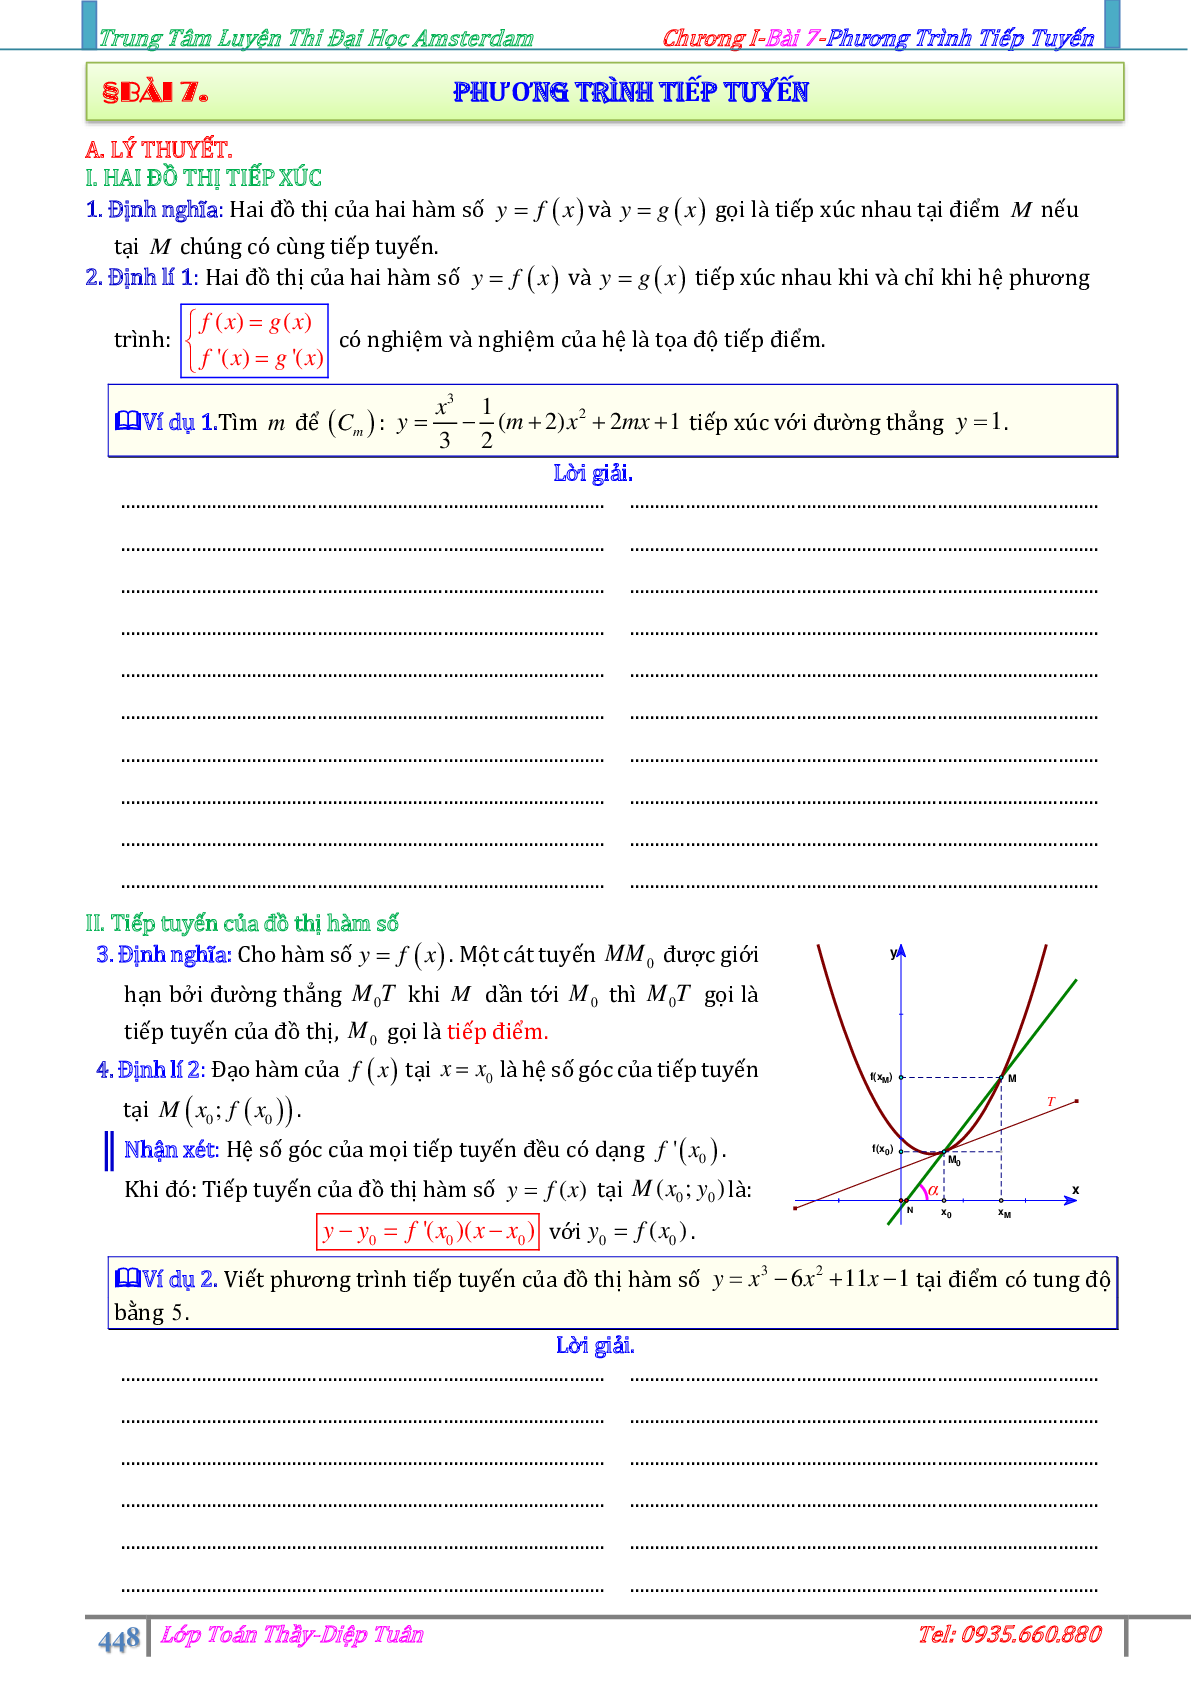 Lý thuyết, bài tập về Phương trình tiếp tuyến (trang 1)